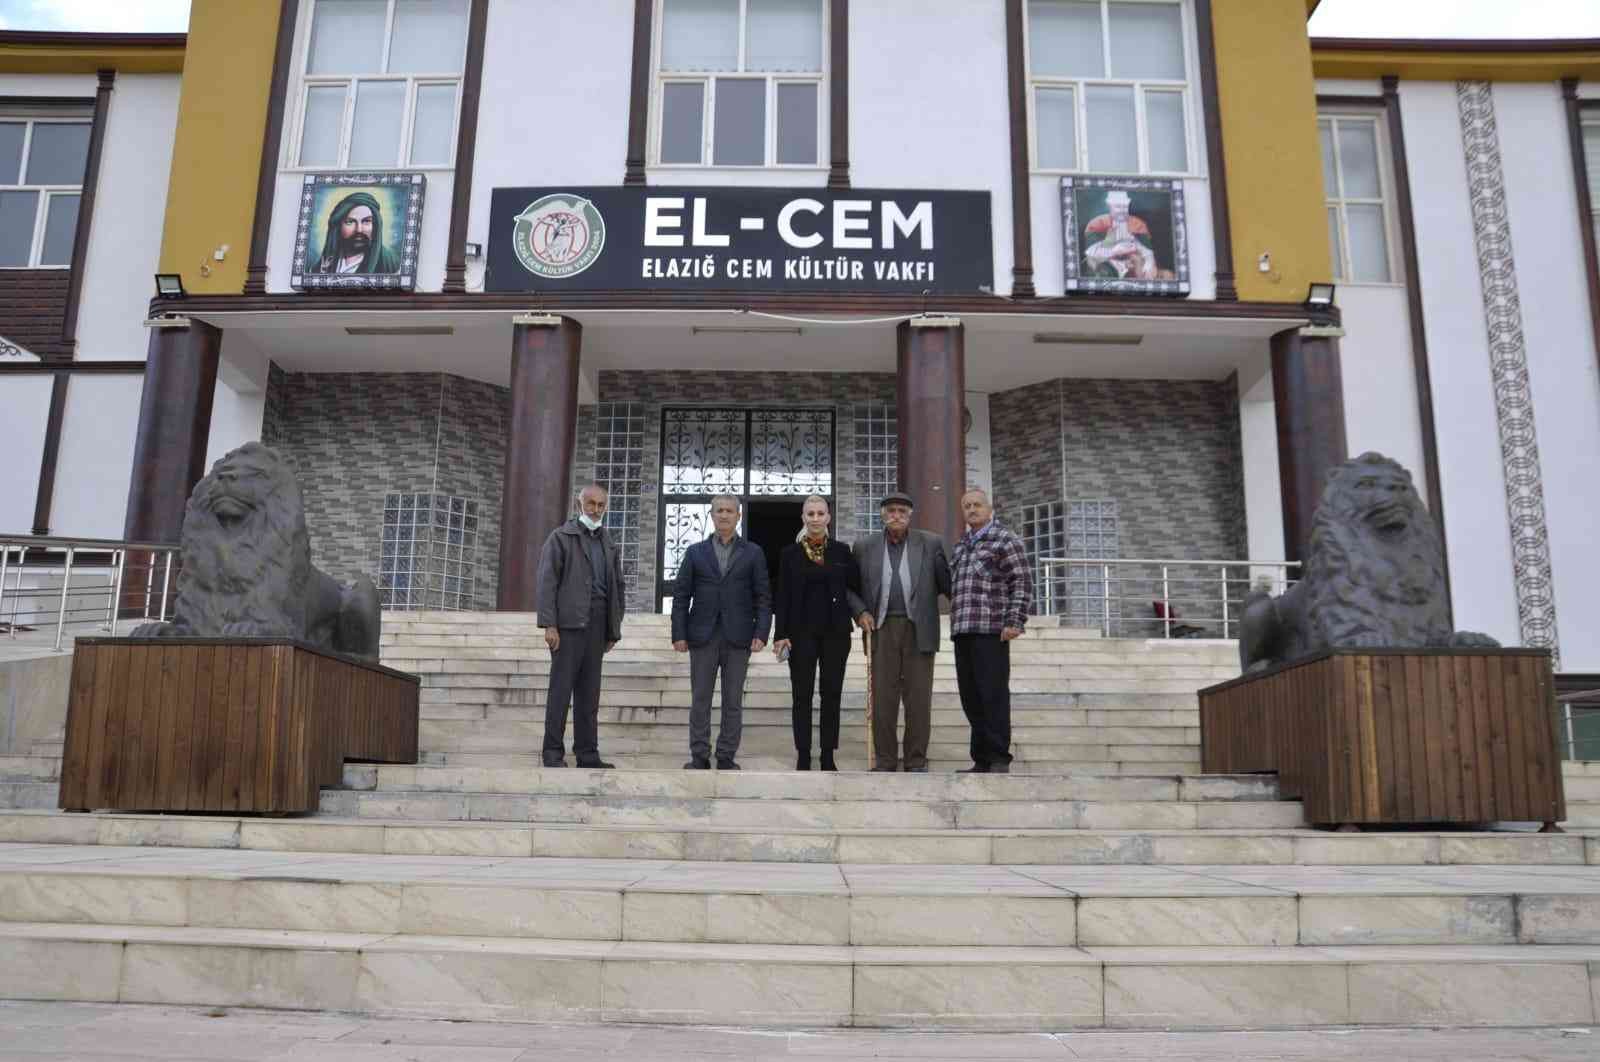 Başkan Kılıçoğlu, Elazığ’da cemevlerini ziyaret etti #elazig